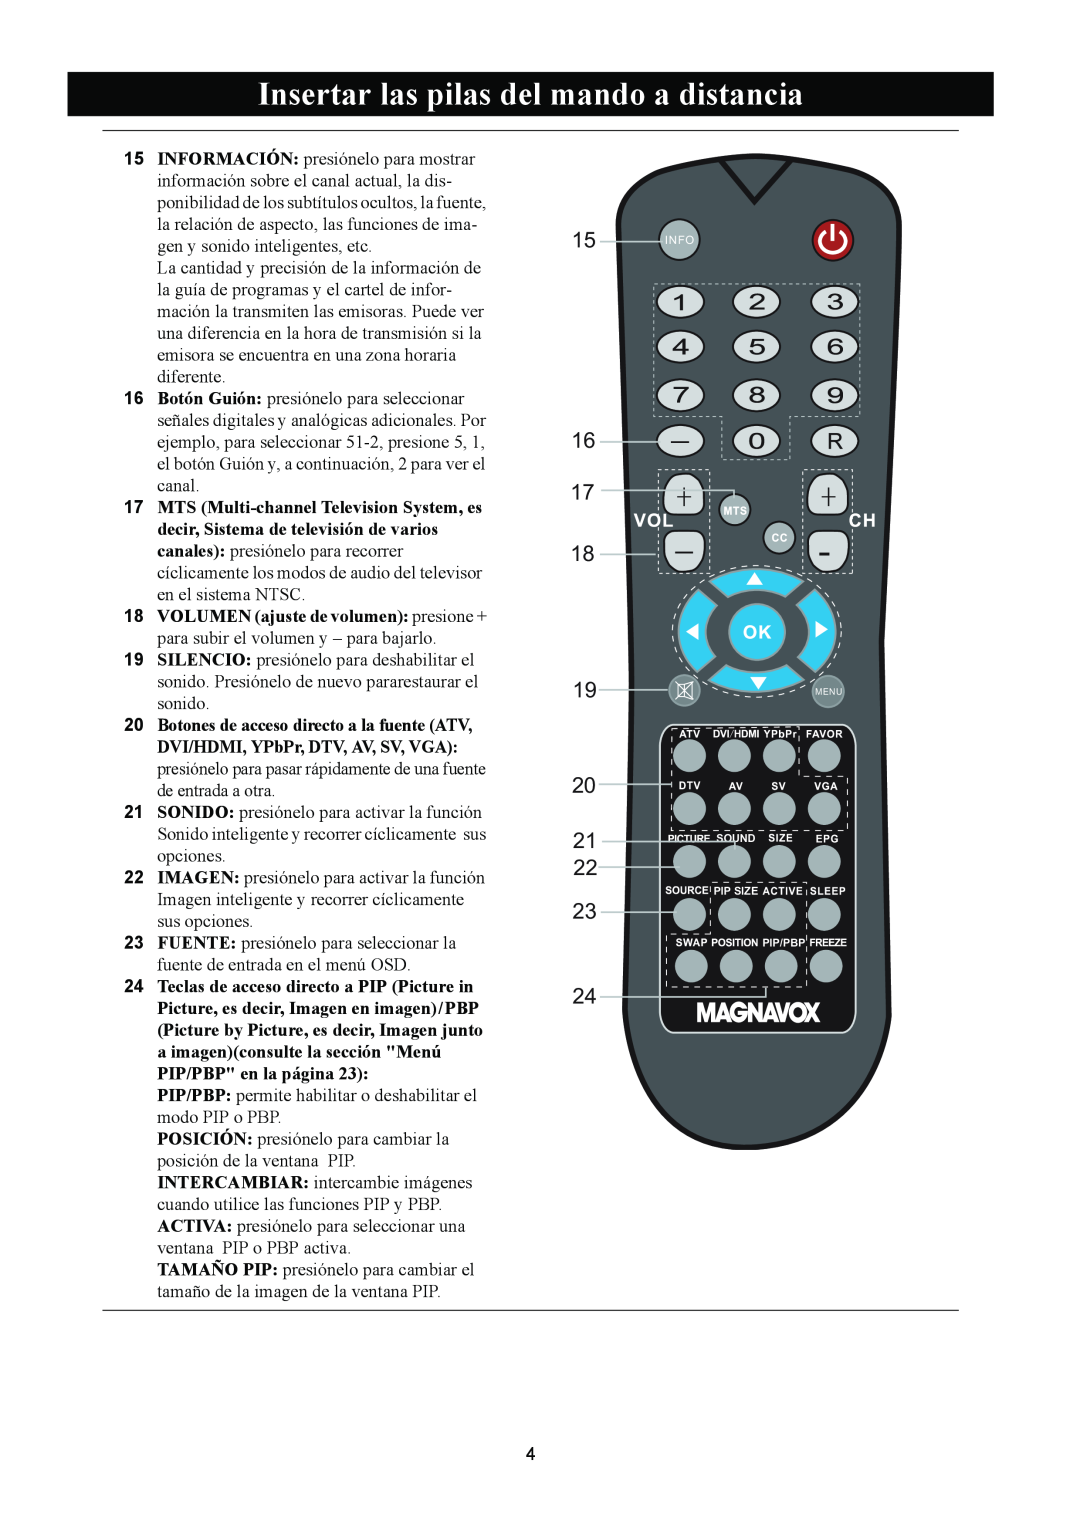 Magnavox 50ML8105D/17 Insertar las pilas del mando a distancia, PIP/PBP permite habilitar o deshabilitar el modo PIP o PBP 